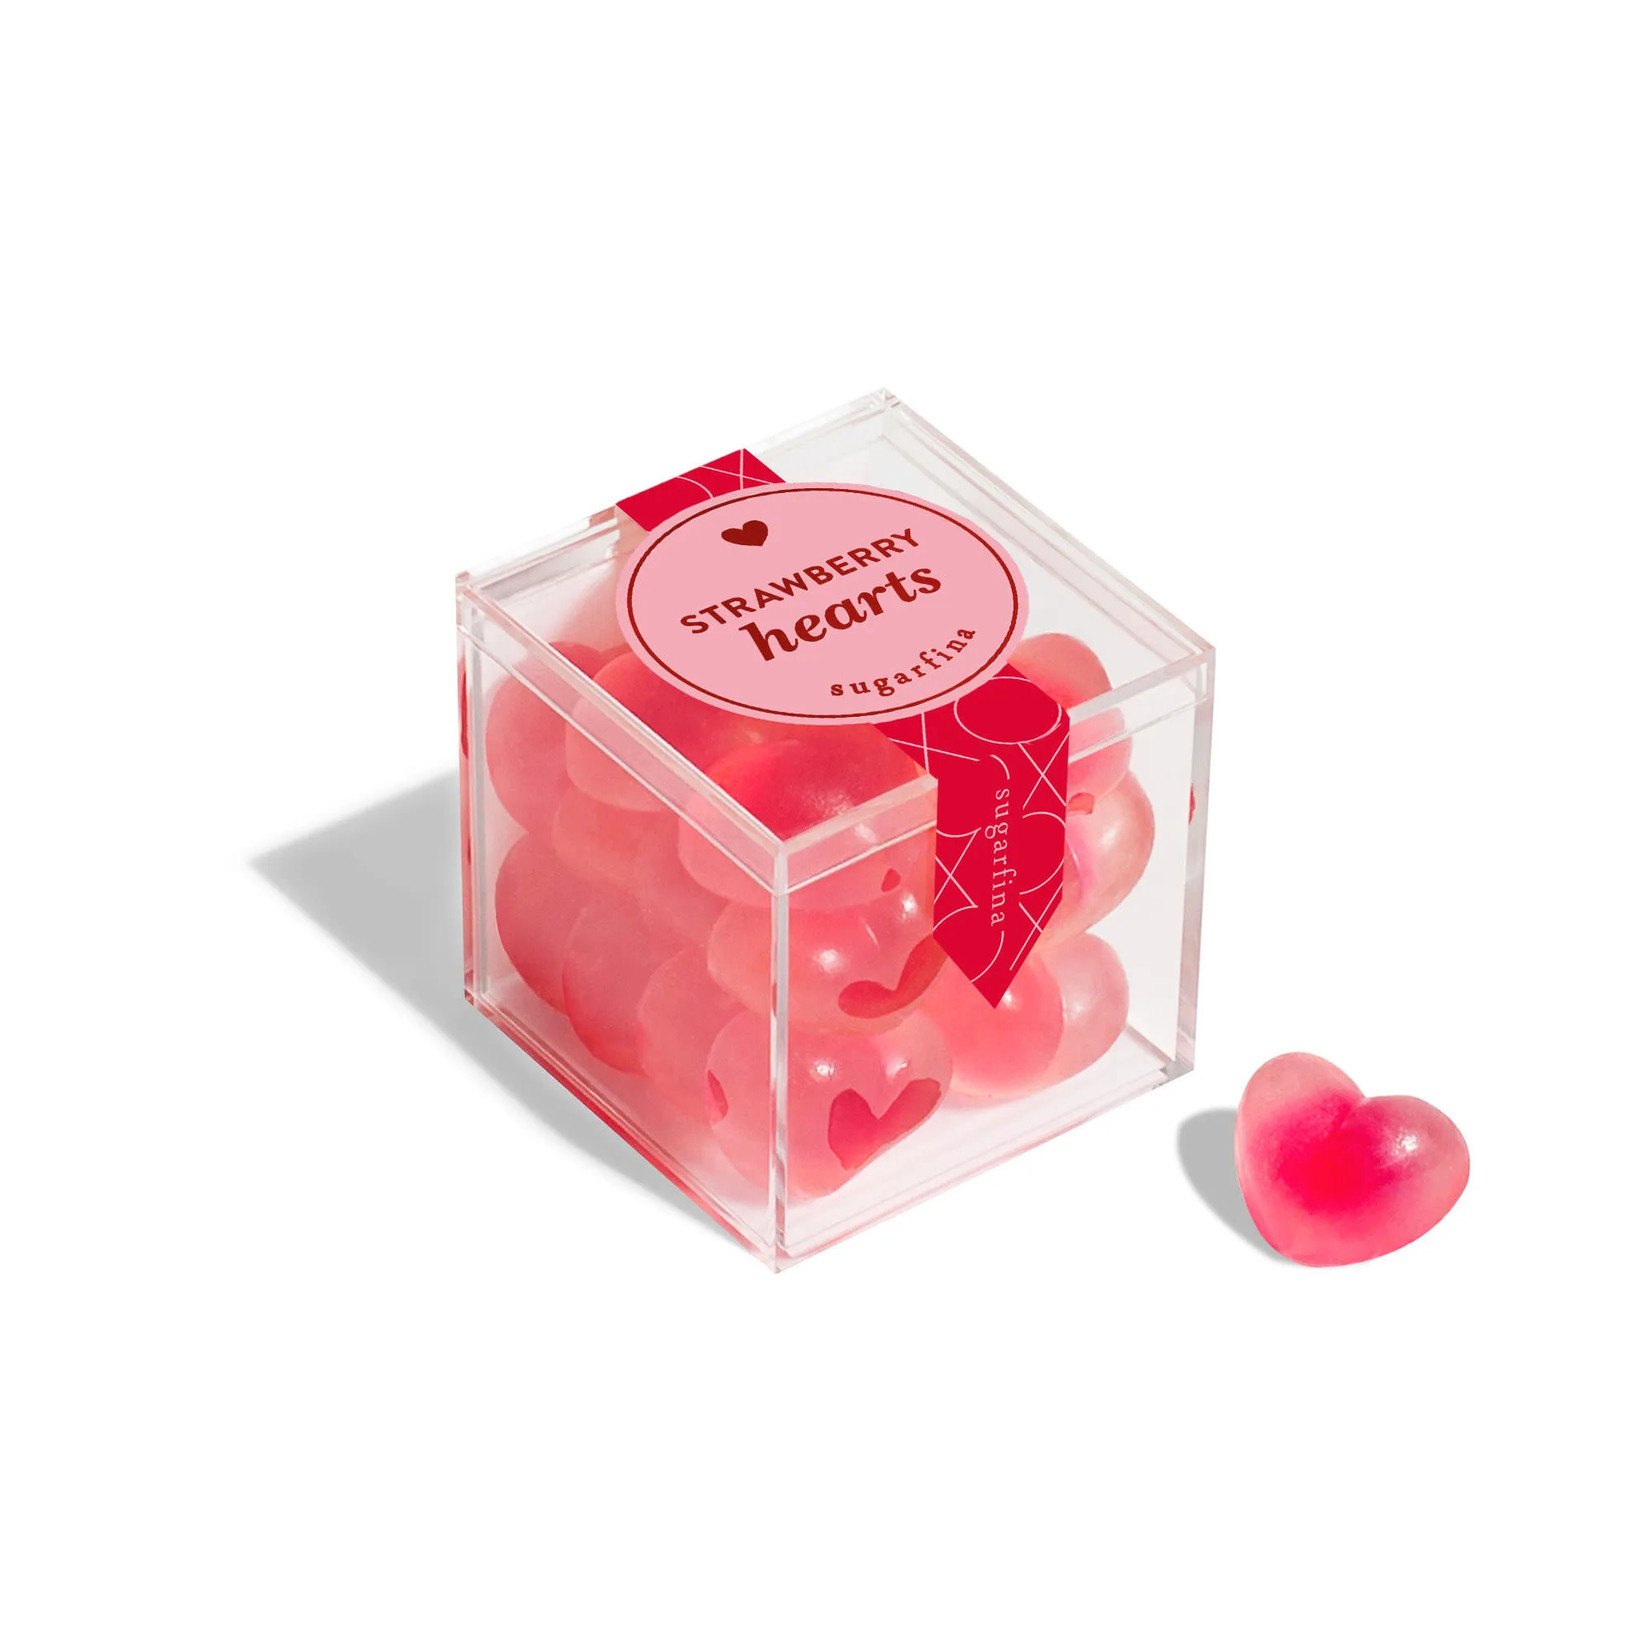 Sugarfina Strawberry Hearts - Small (Valentine's Day)